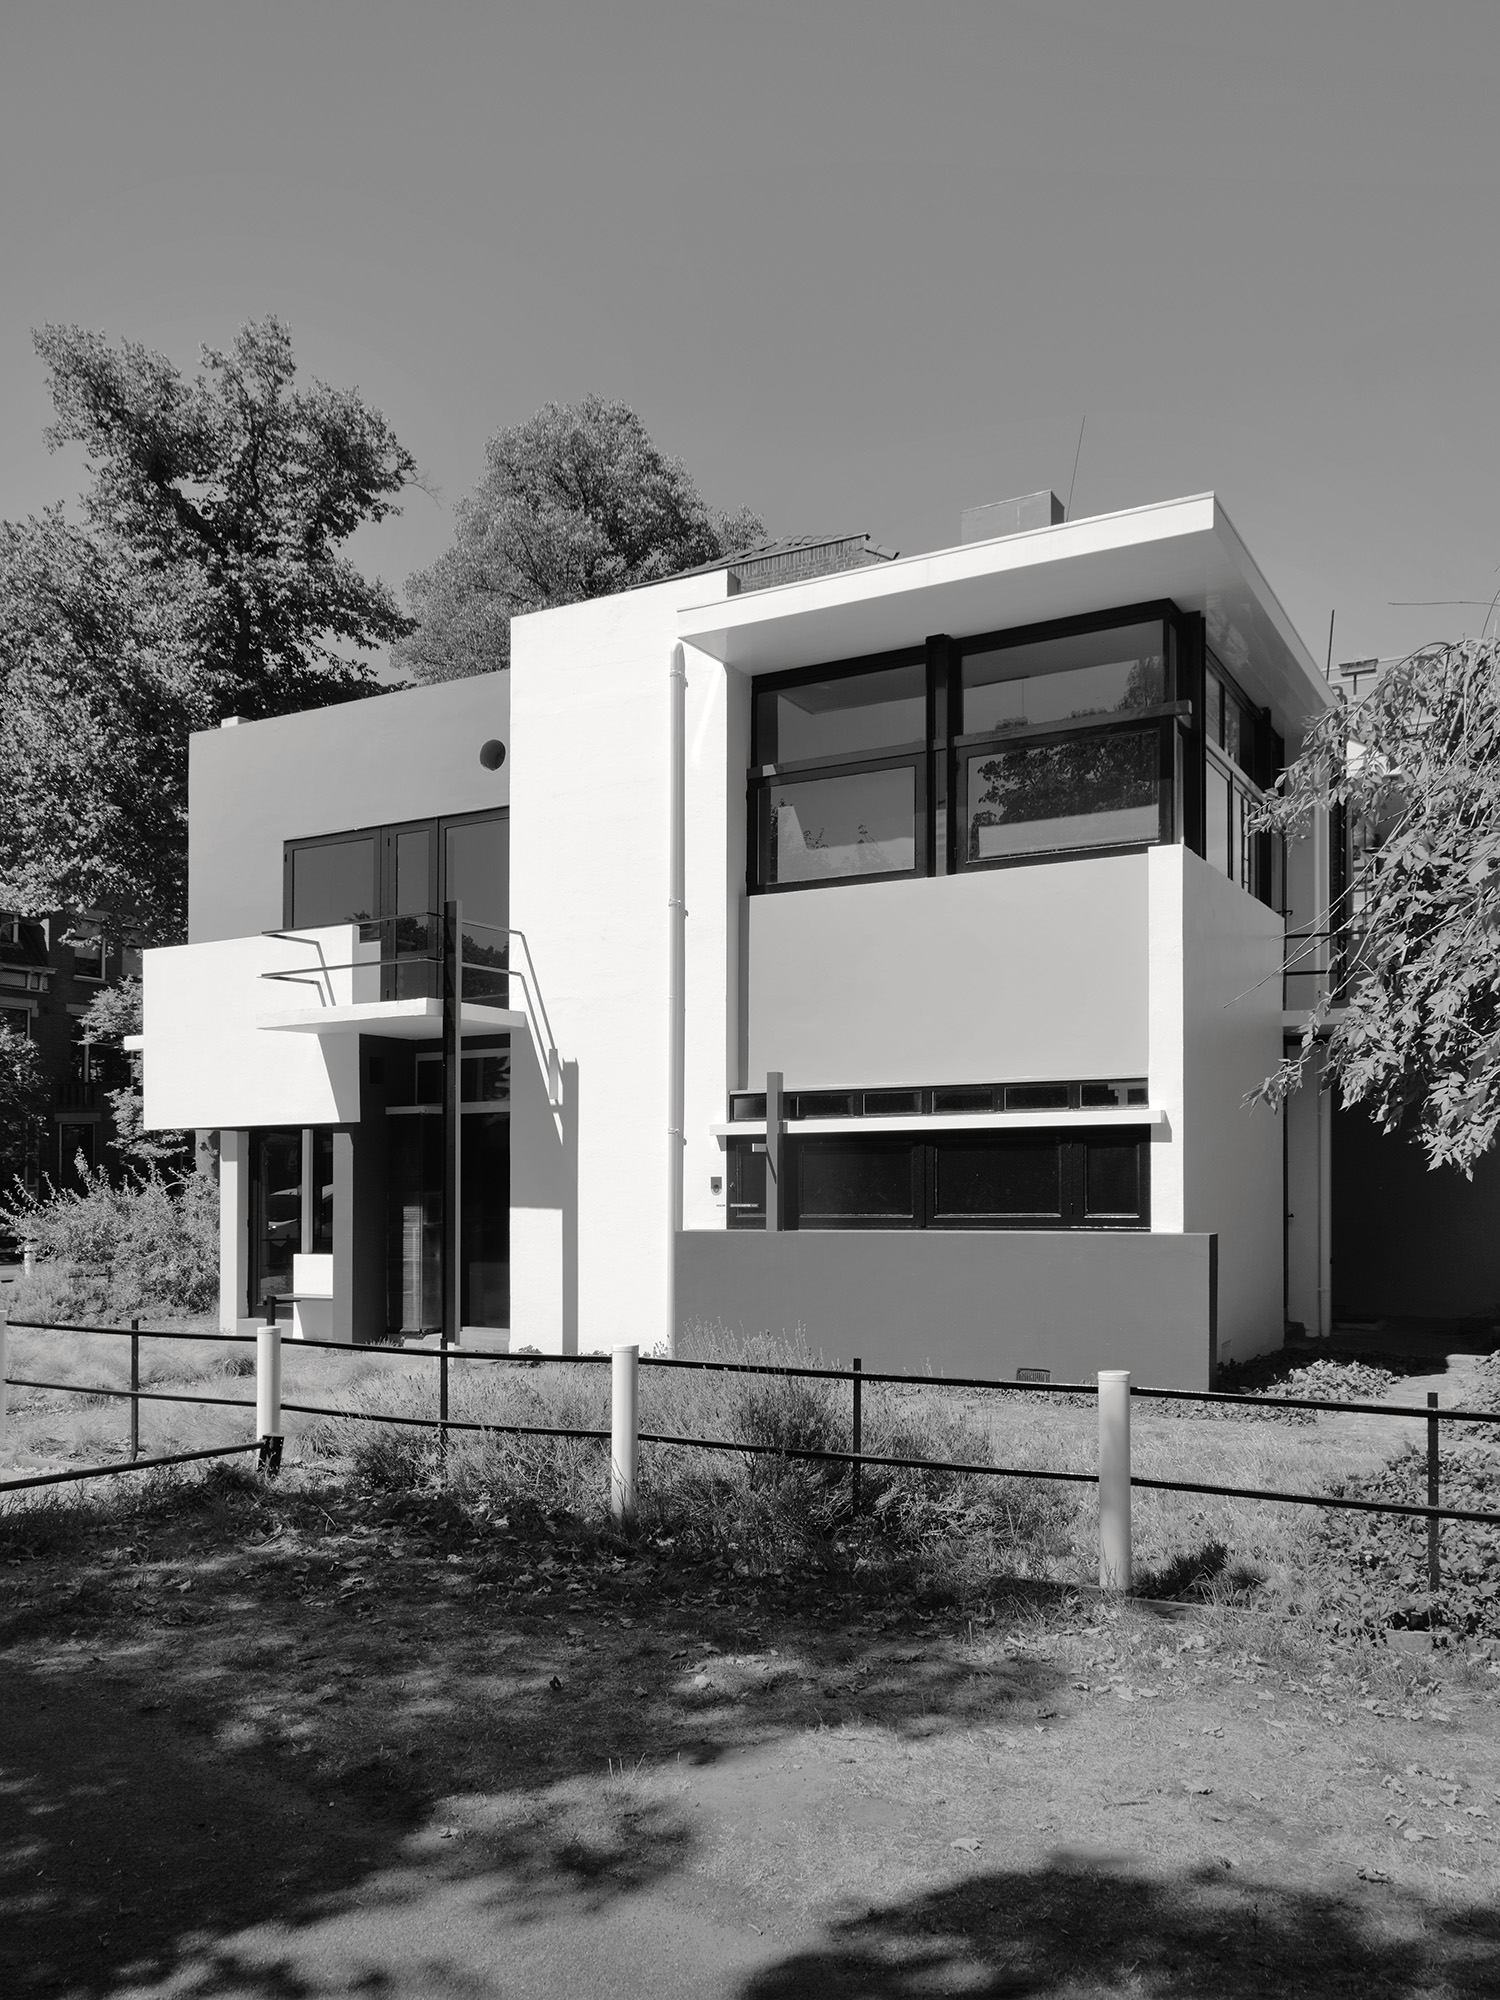 Rietveld Schröder House
Gerrit Rietveld, 1924
Utrecht, Netherlands